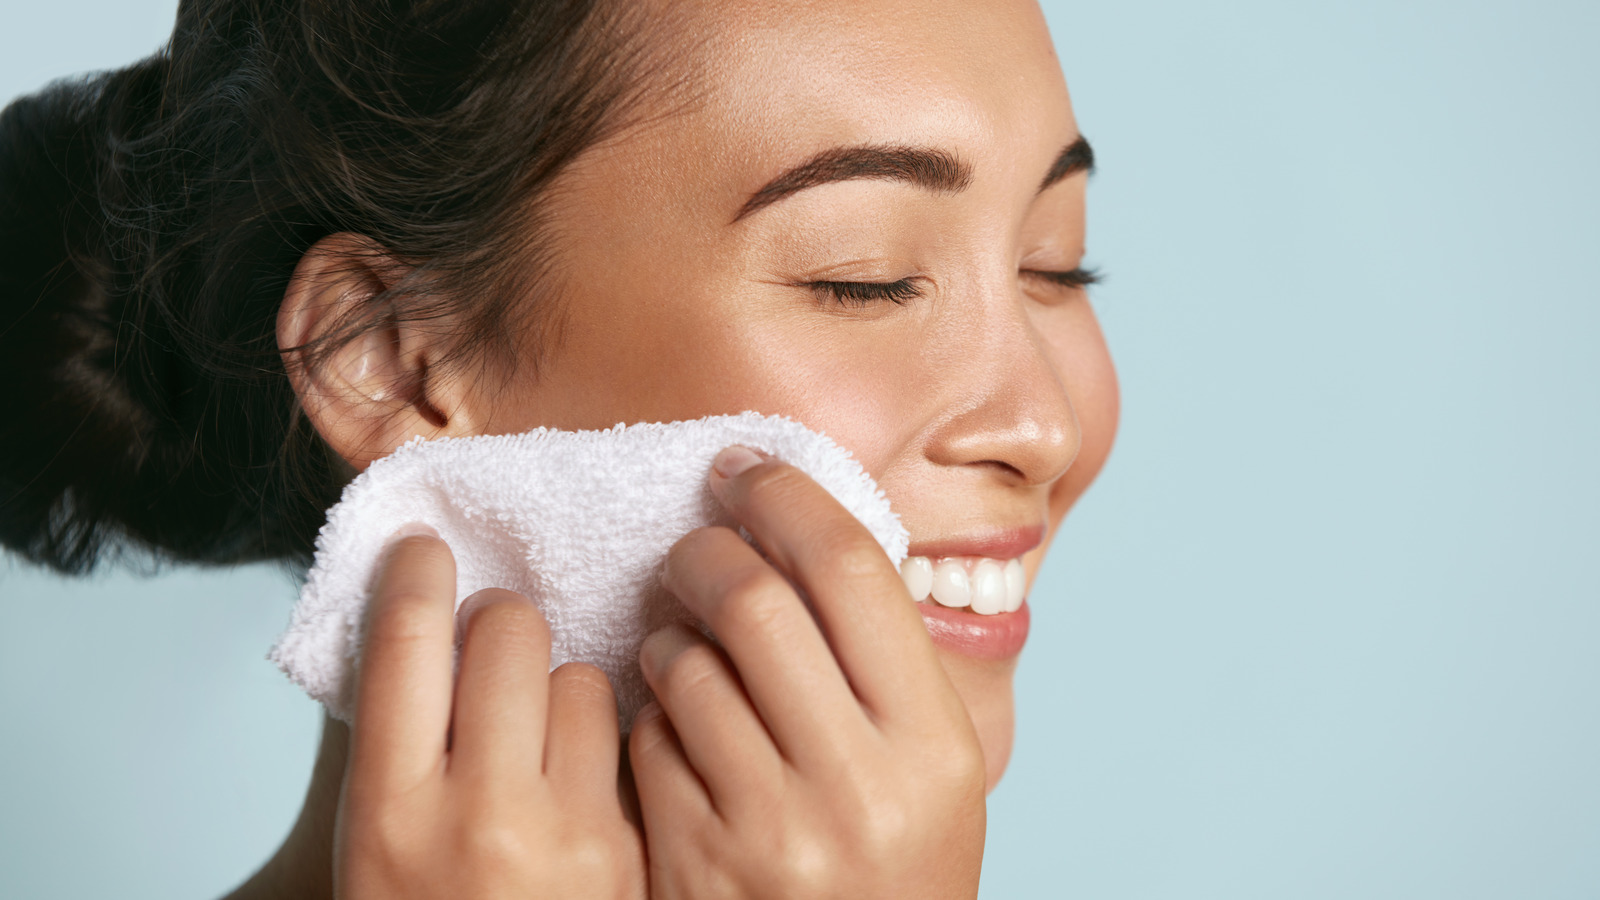 پاک کردن آرایش با این ۶ روش طبیعی پوستتان را عین بچه نرم می کند!